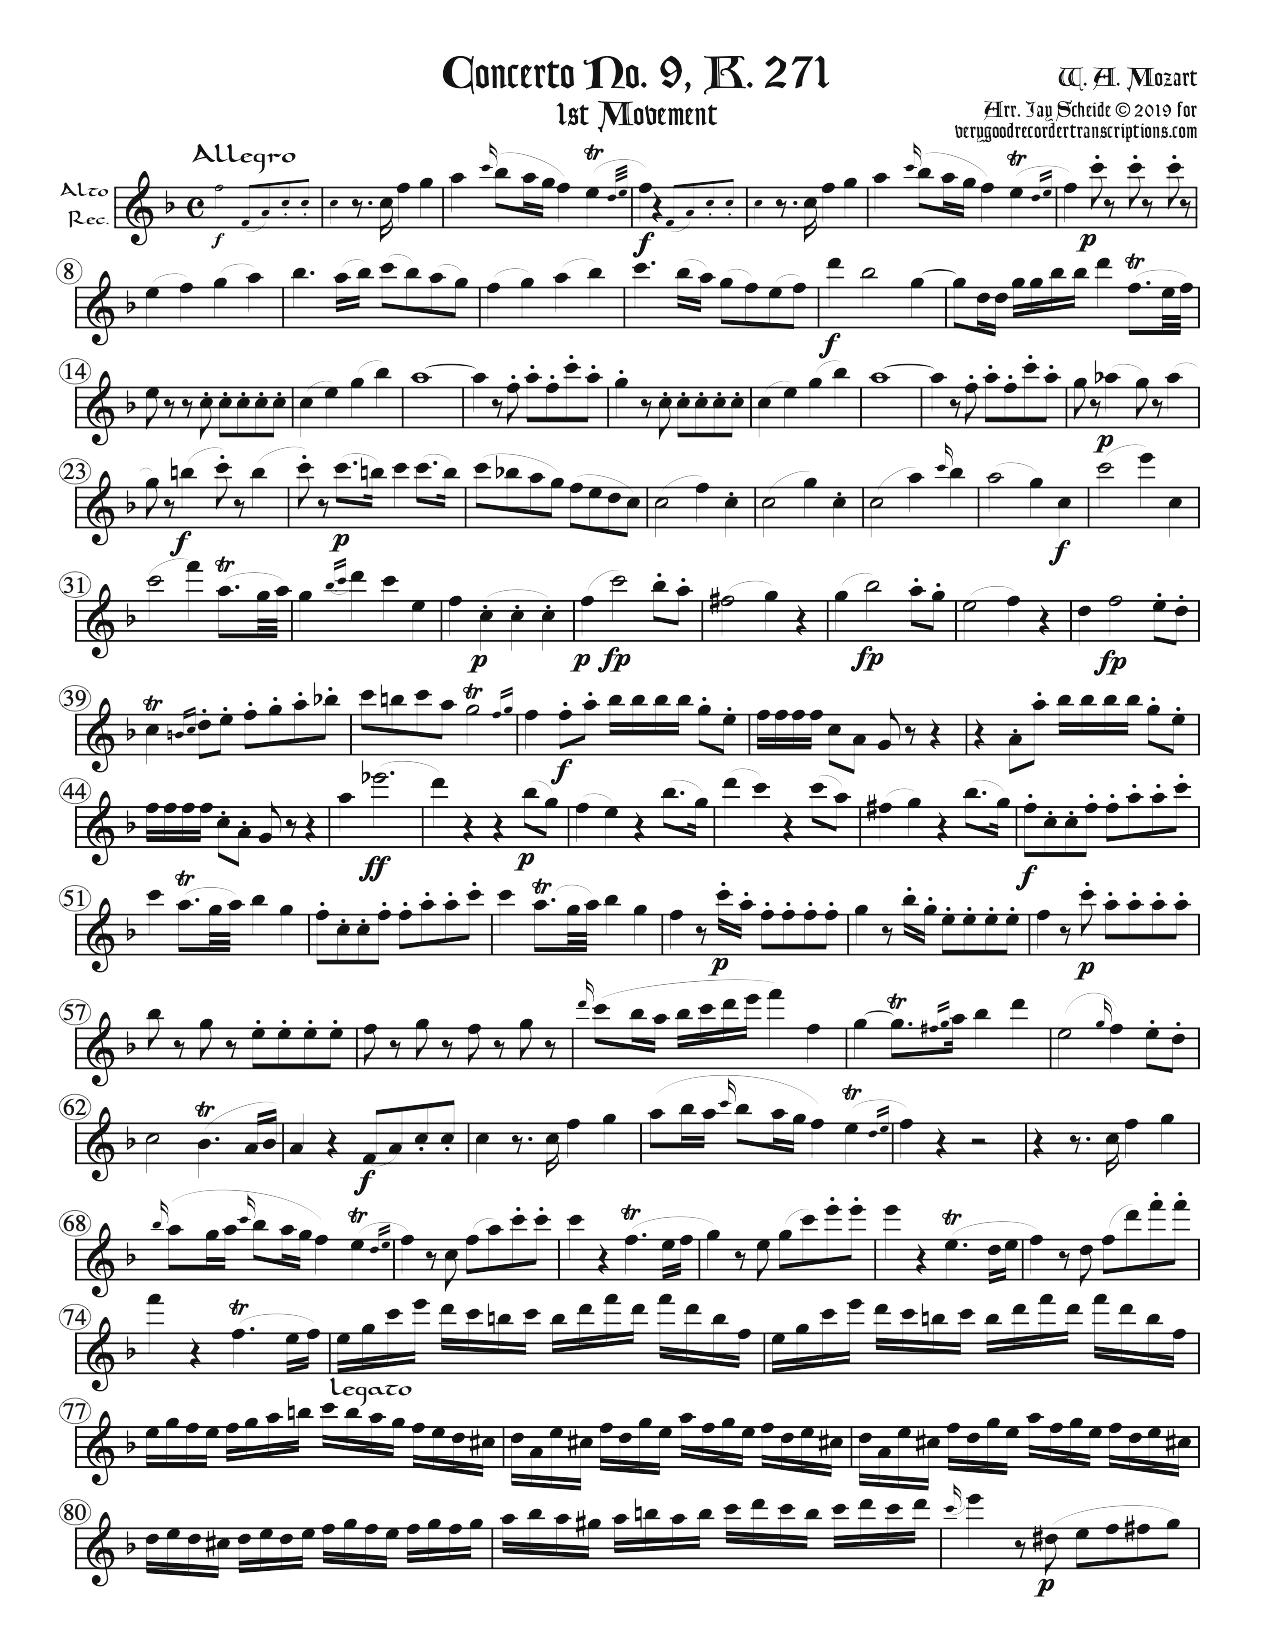 Concerto No. 9, K. 271